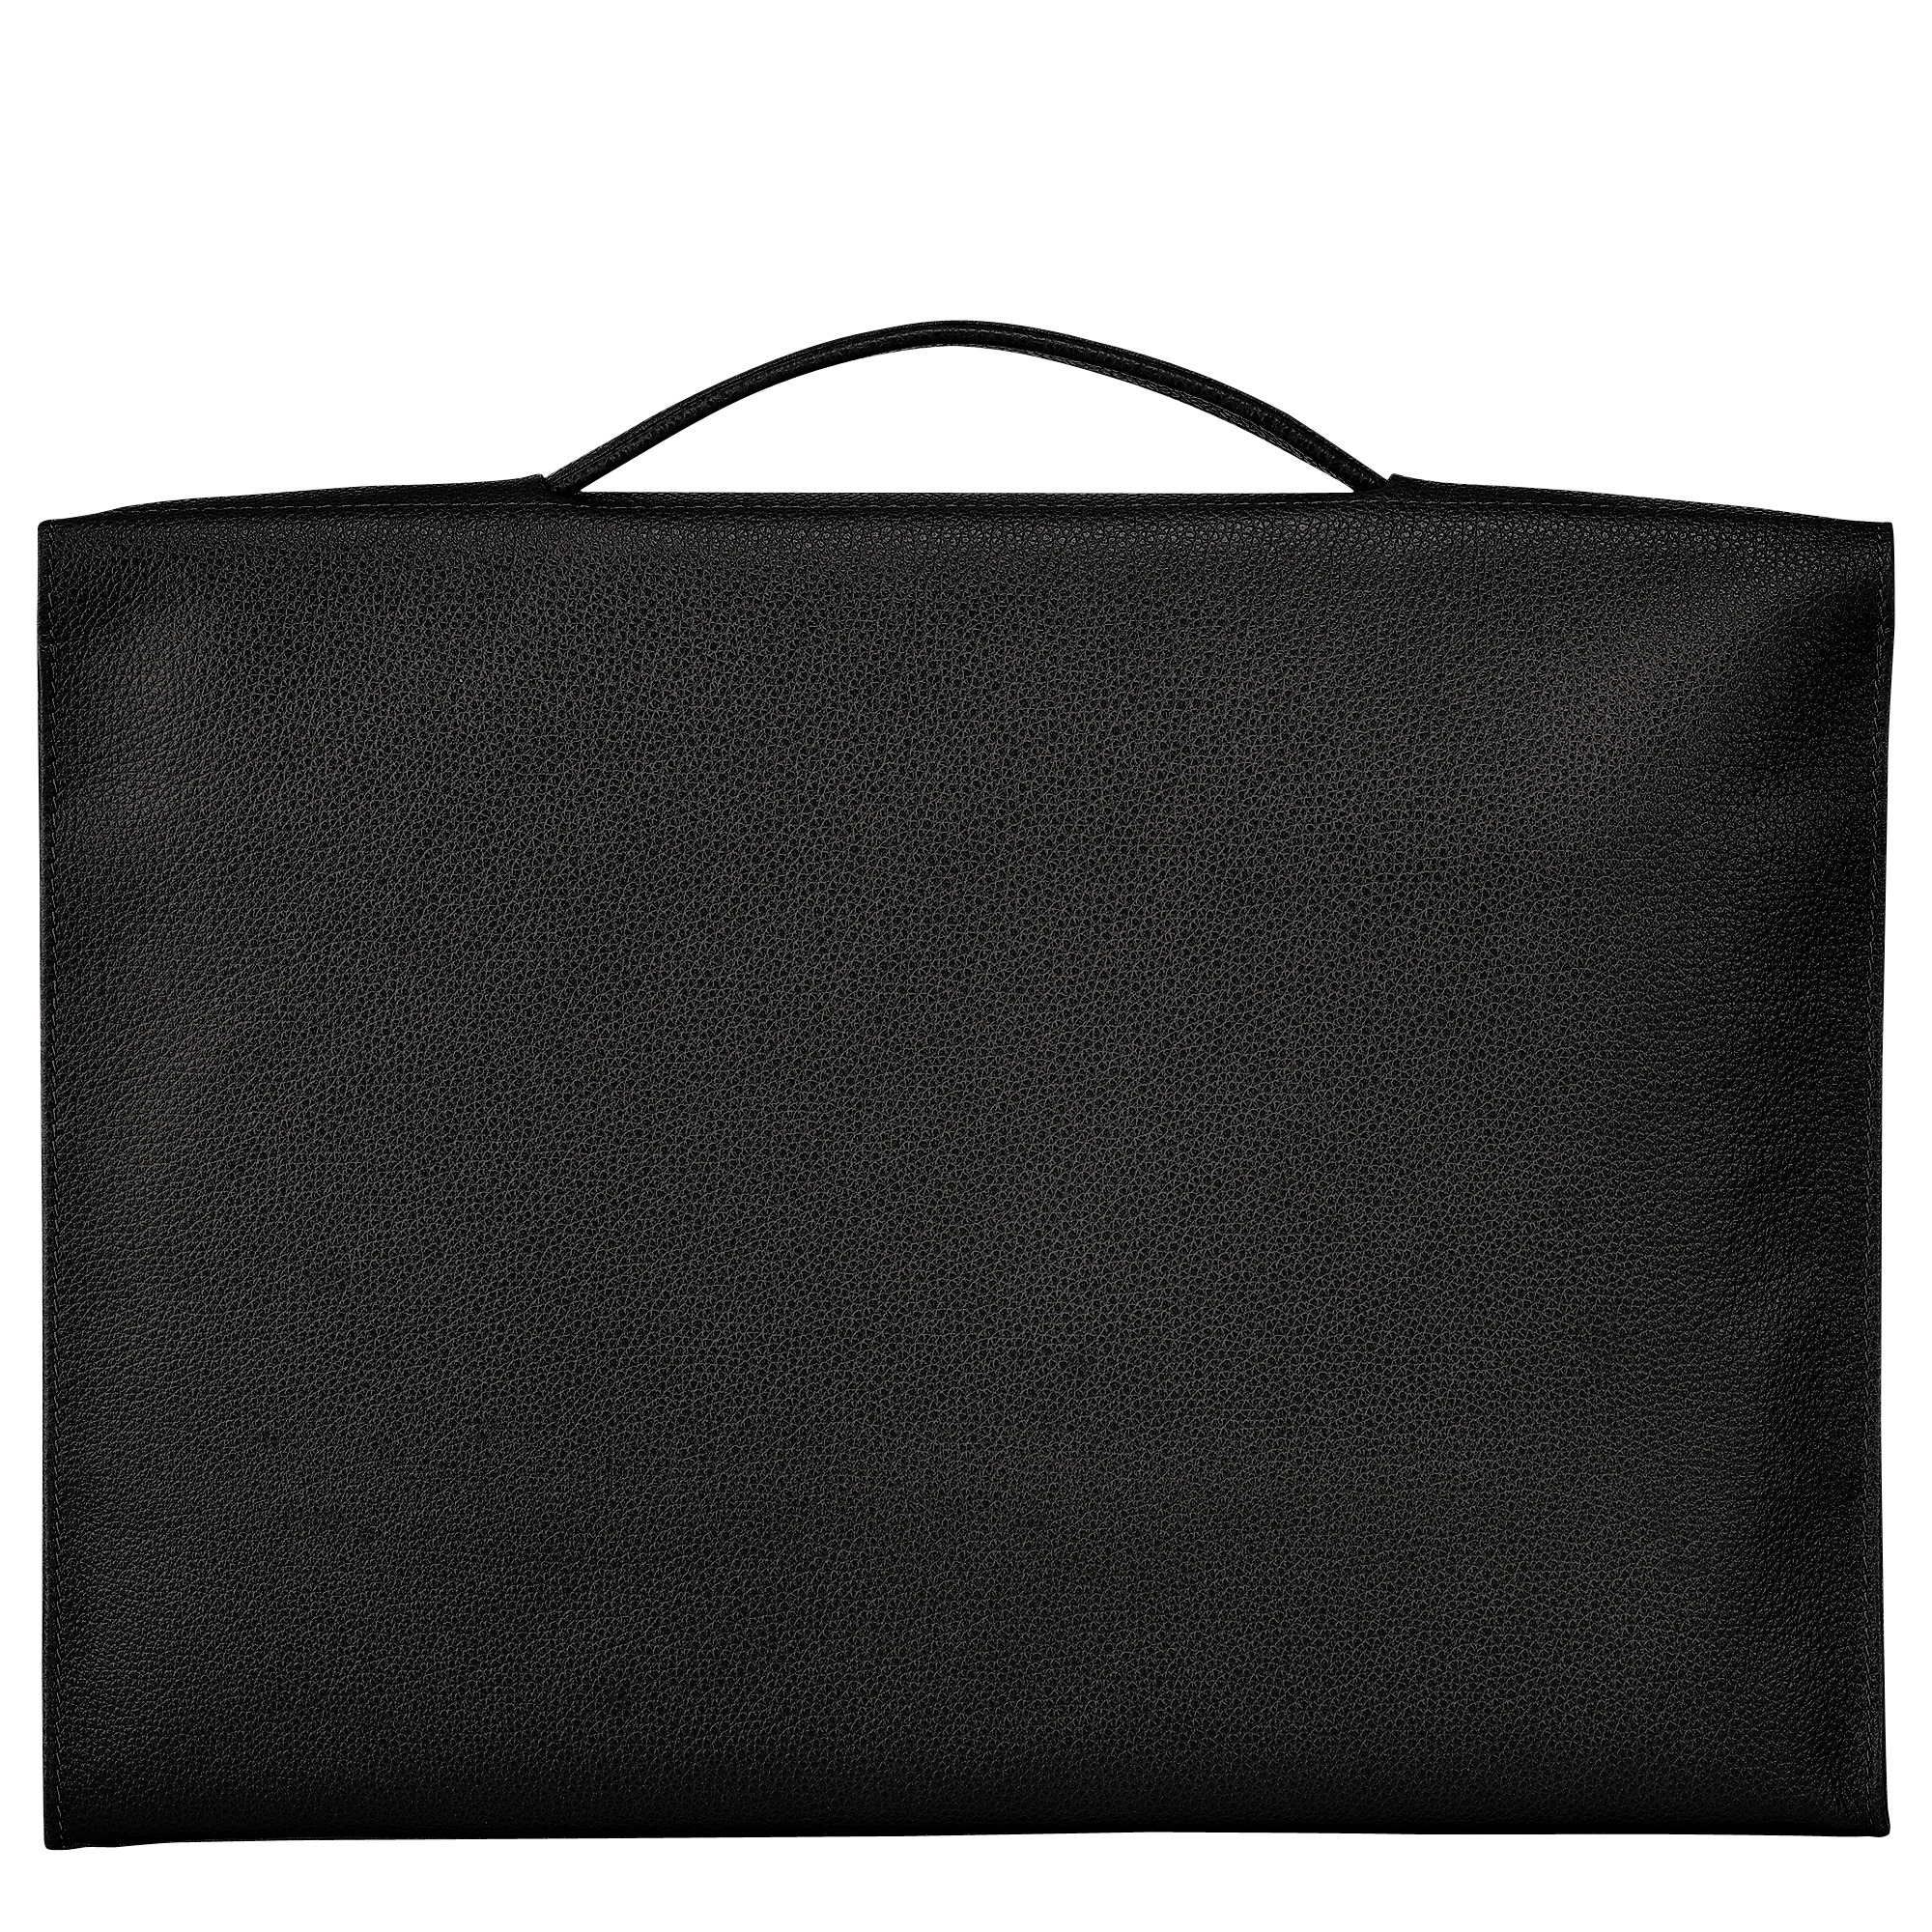 Le Foulonné S Briefcase Black - Leather - 4